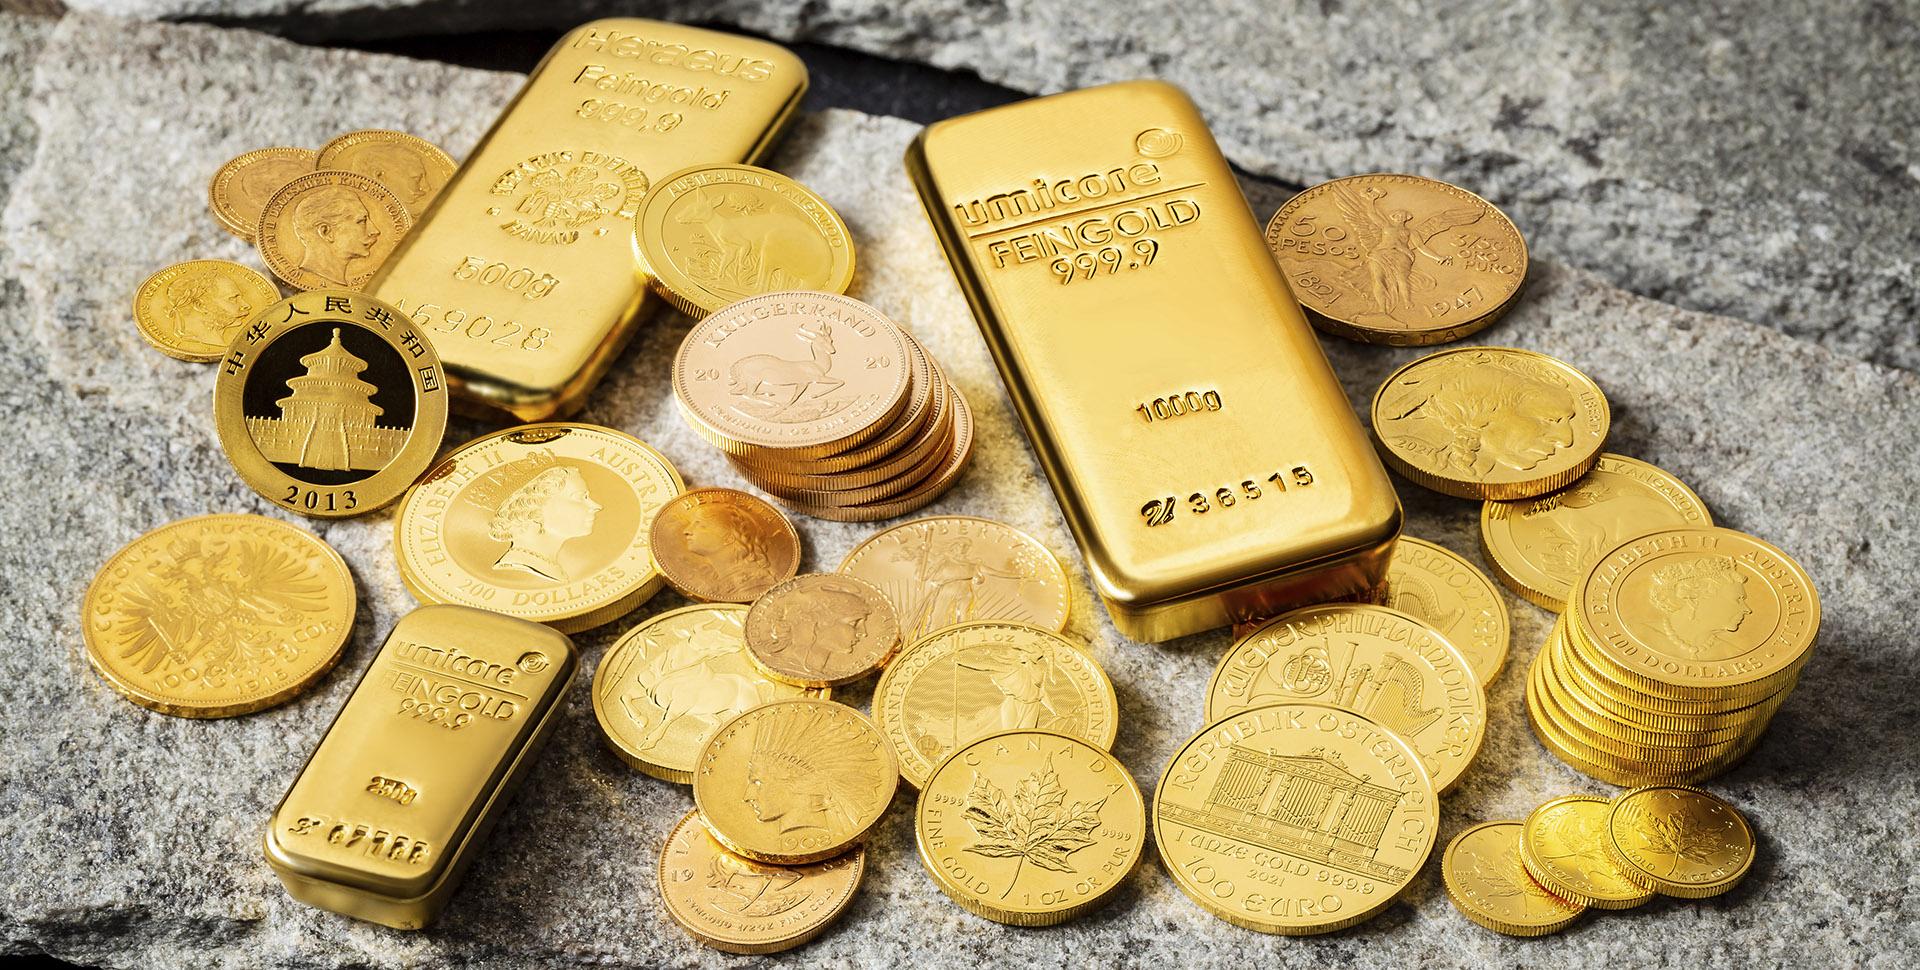 Physisches Gold: Die wertvolle Geldanlage mit vielfältigem Potenzial